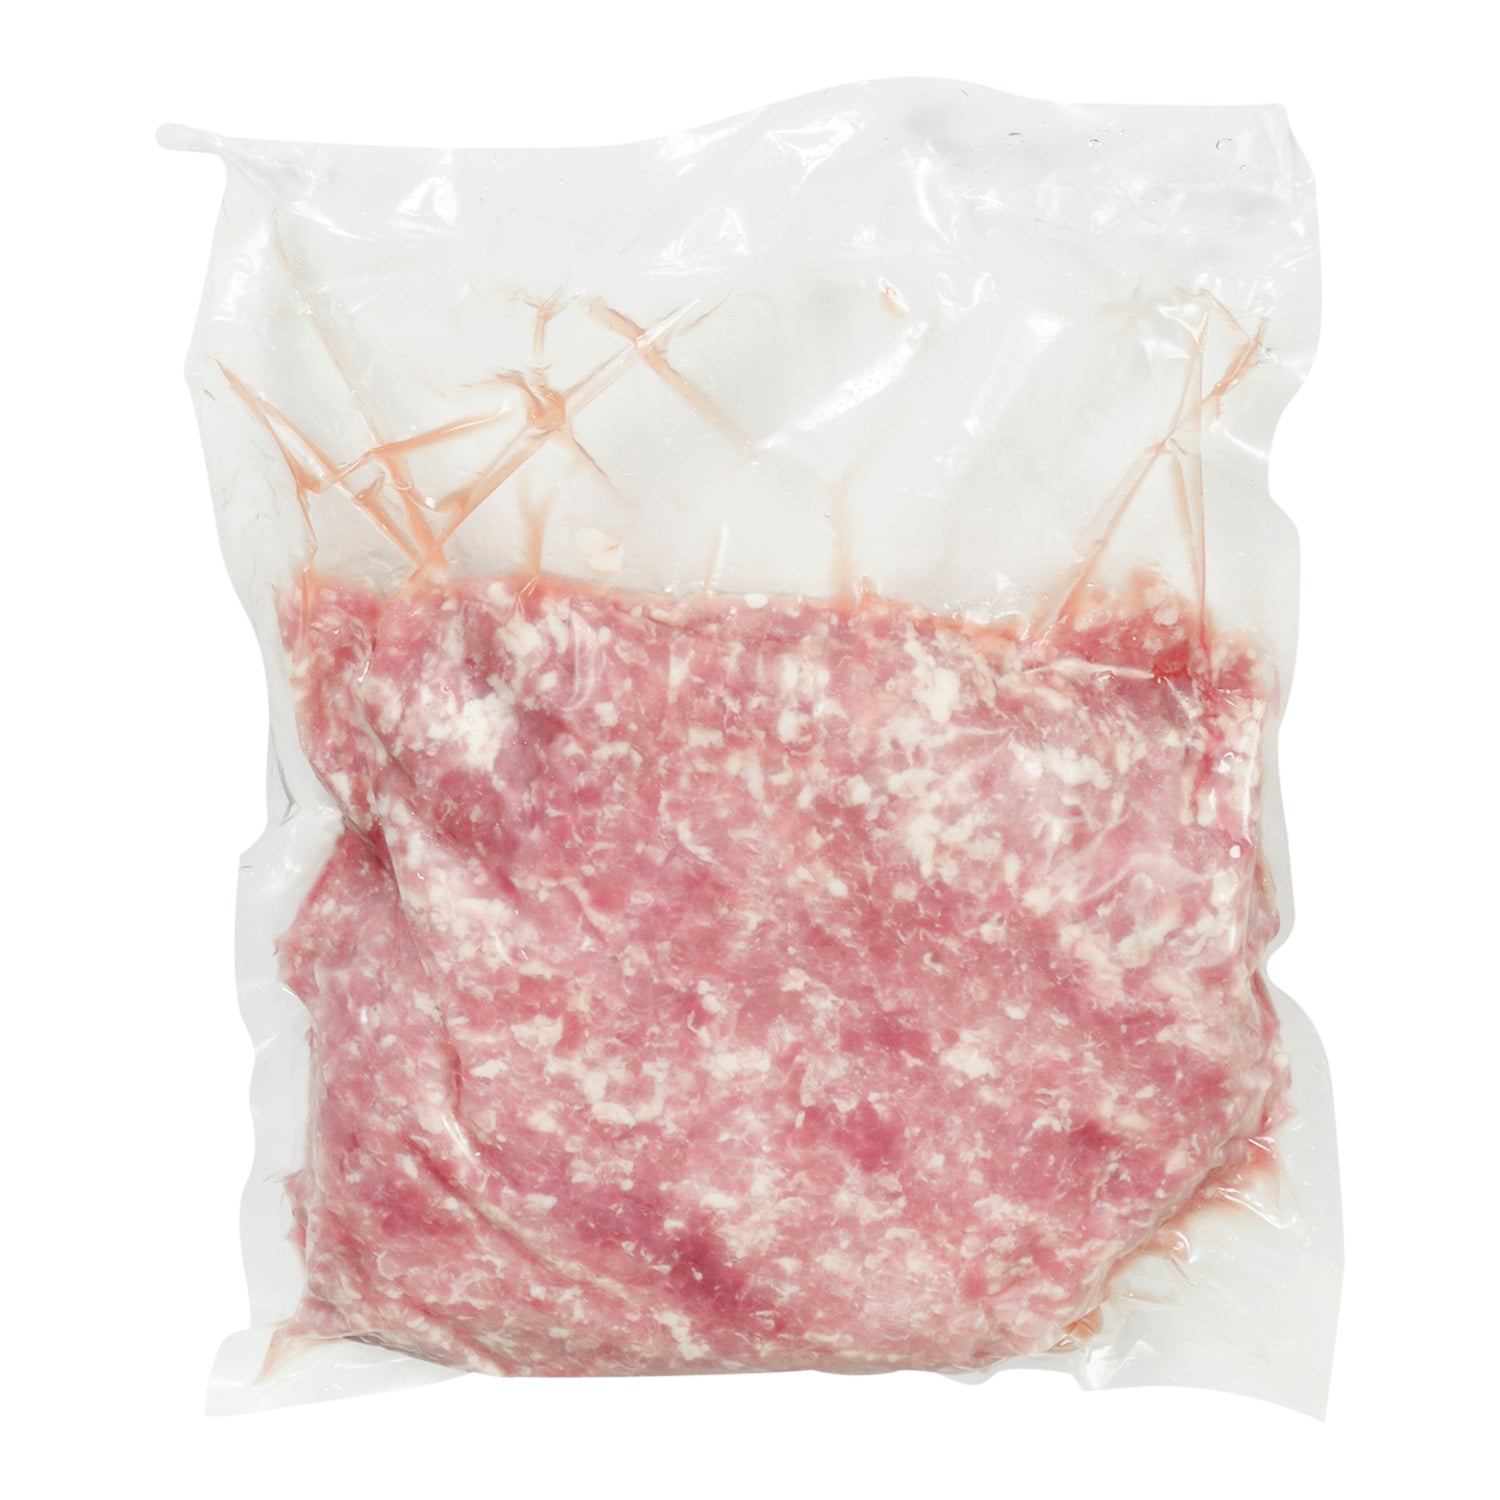 Olymel Lean Ground Pork 2x2.5kg [$8.59/kg] [$3.90/lb]